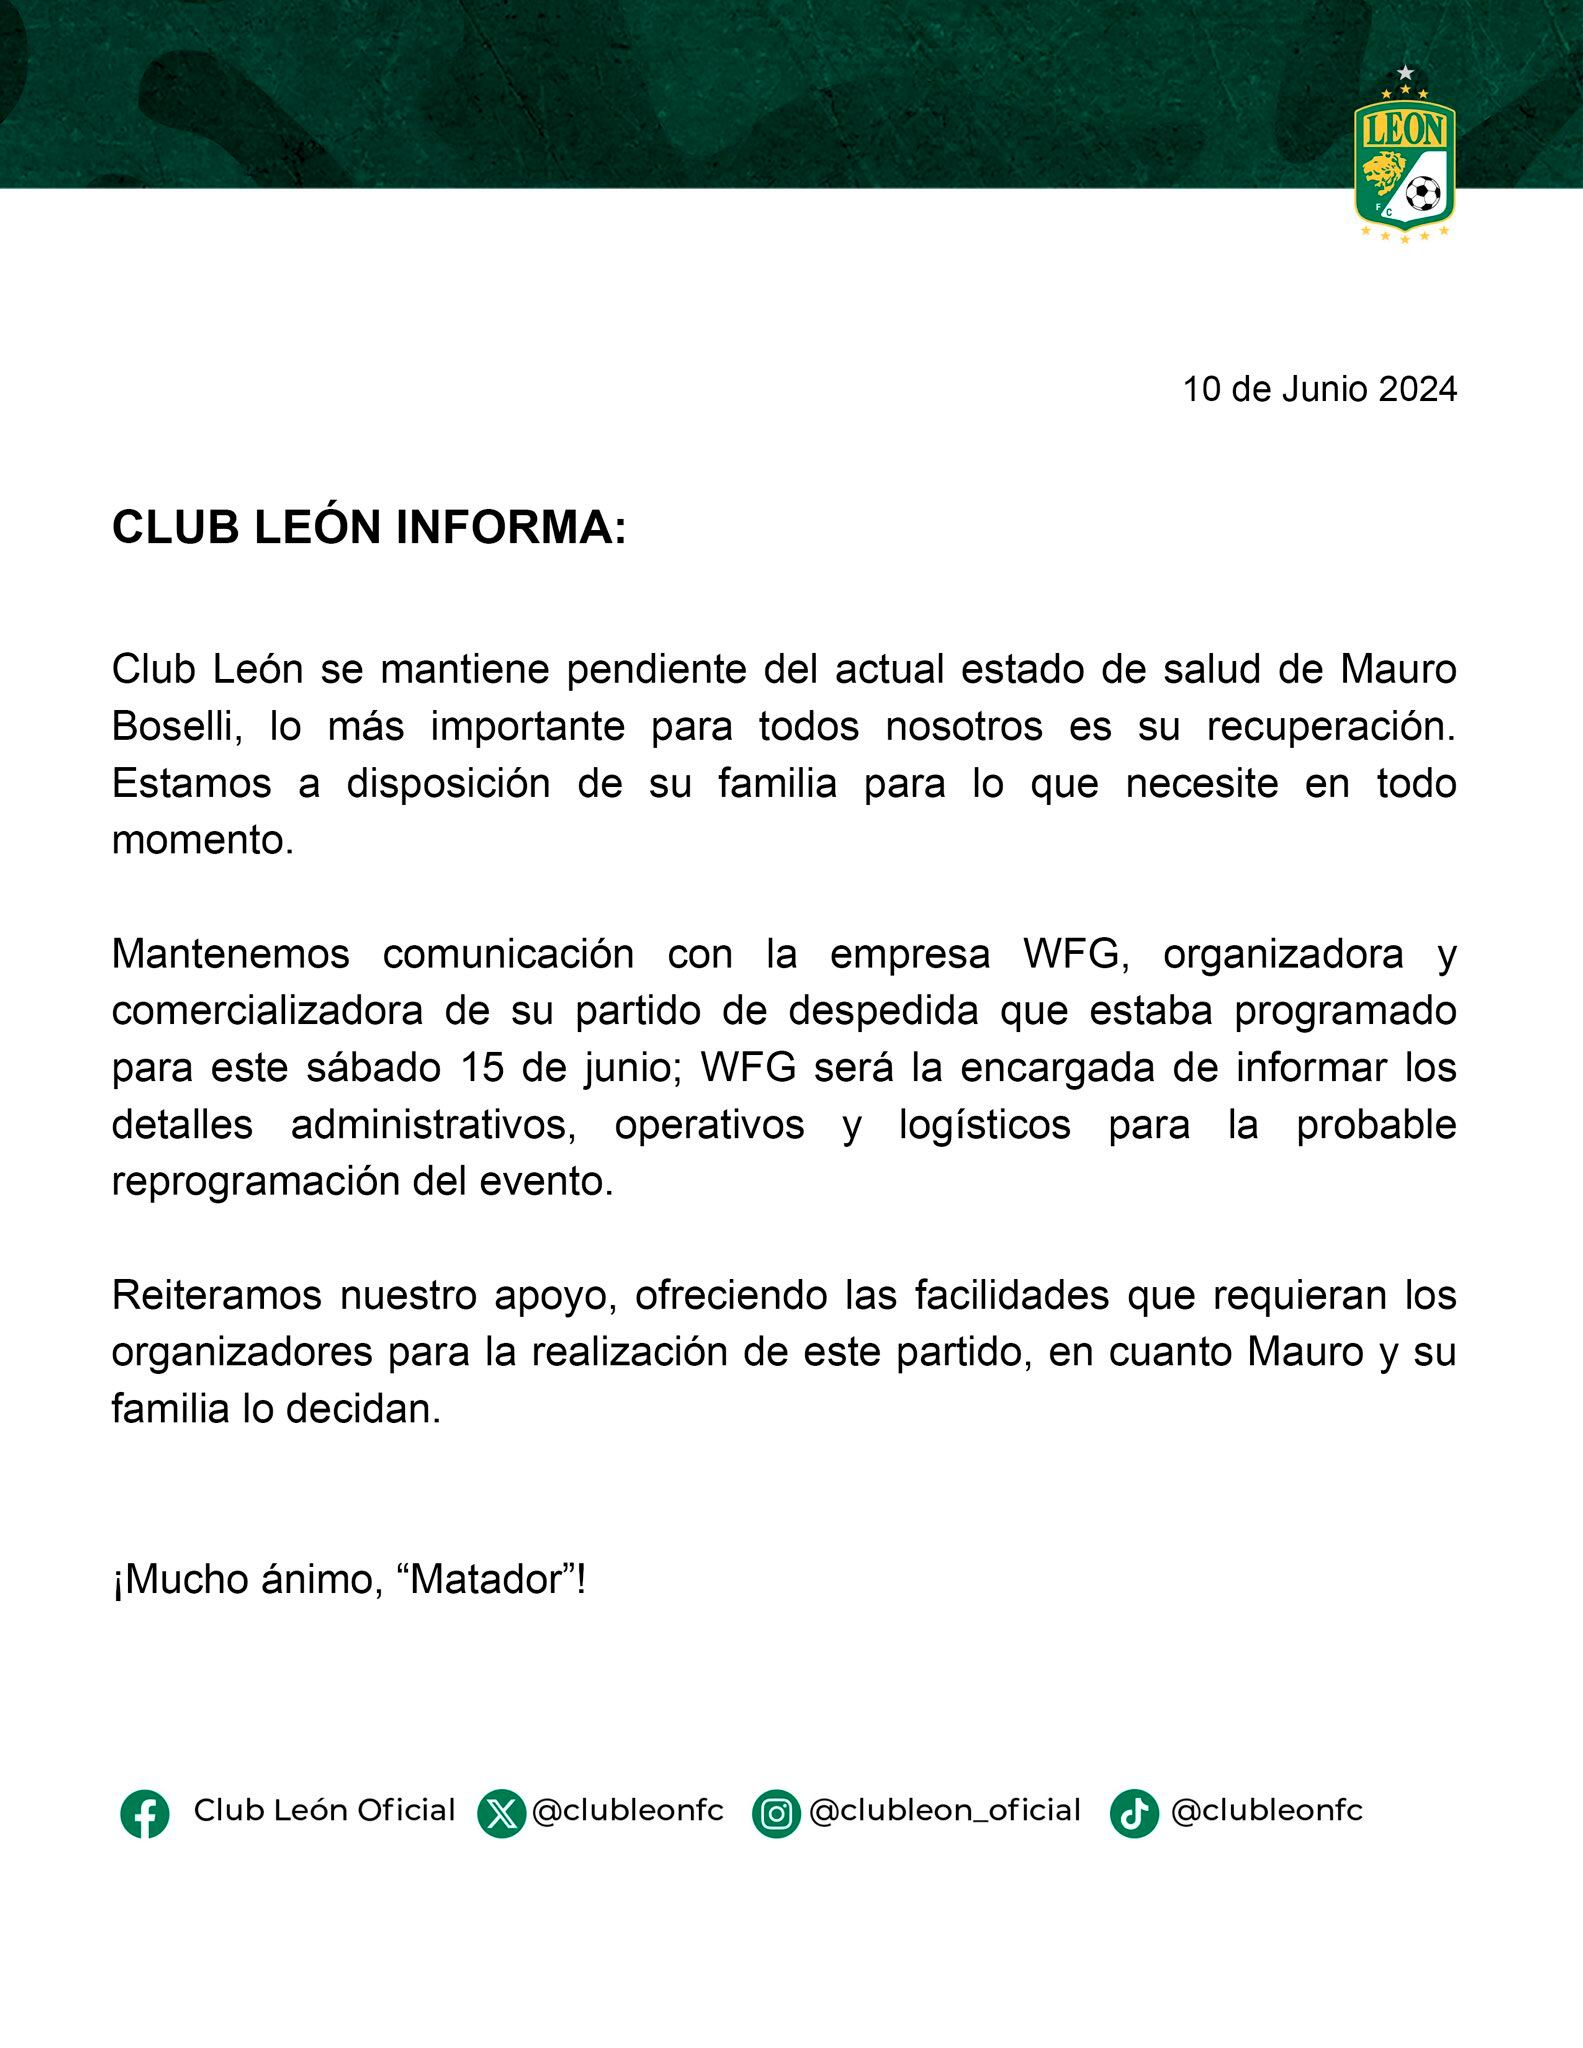 El comunicado de León